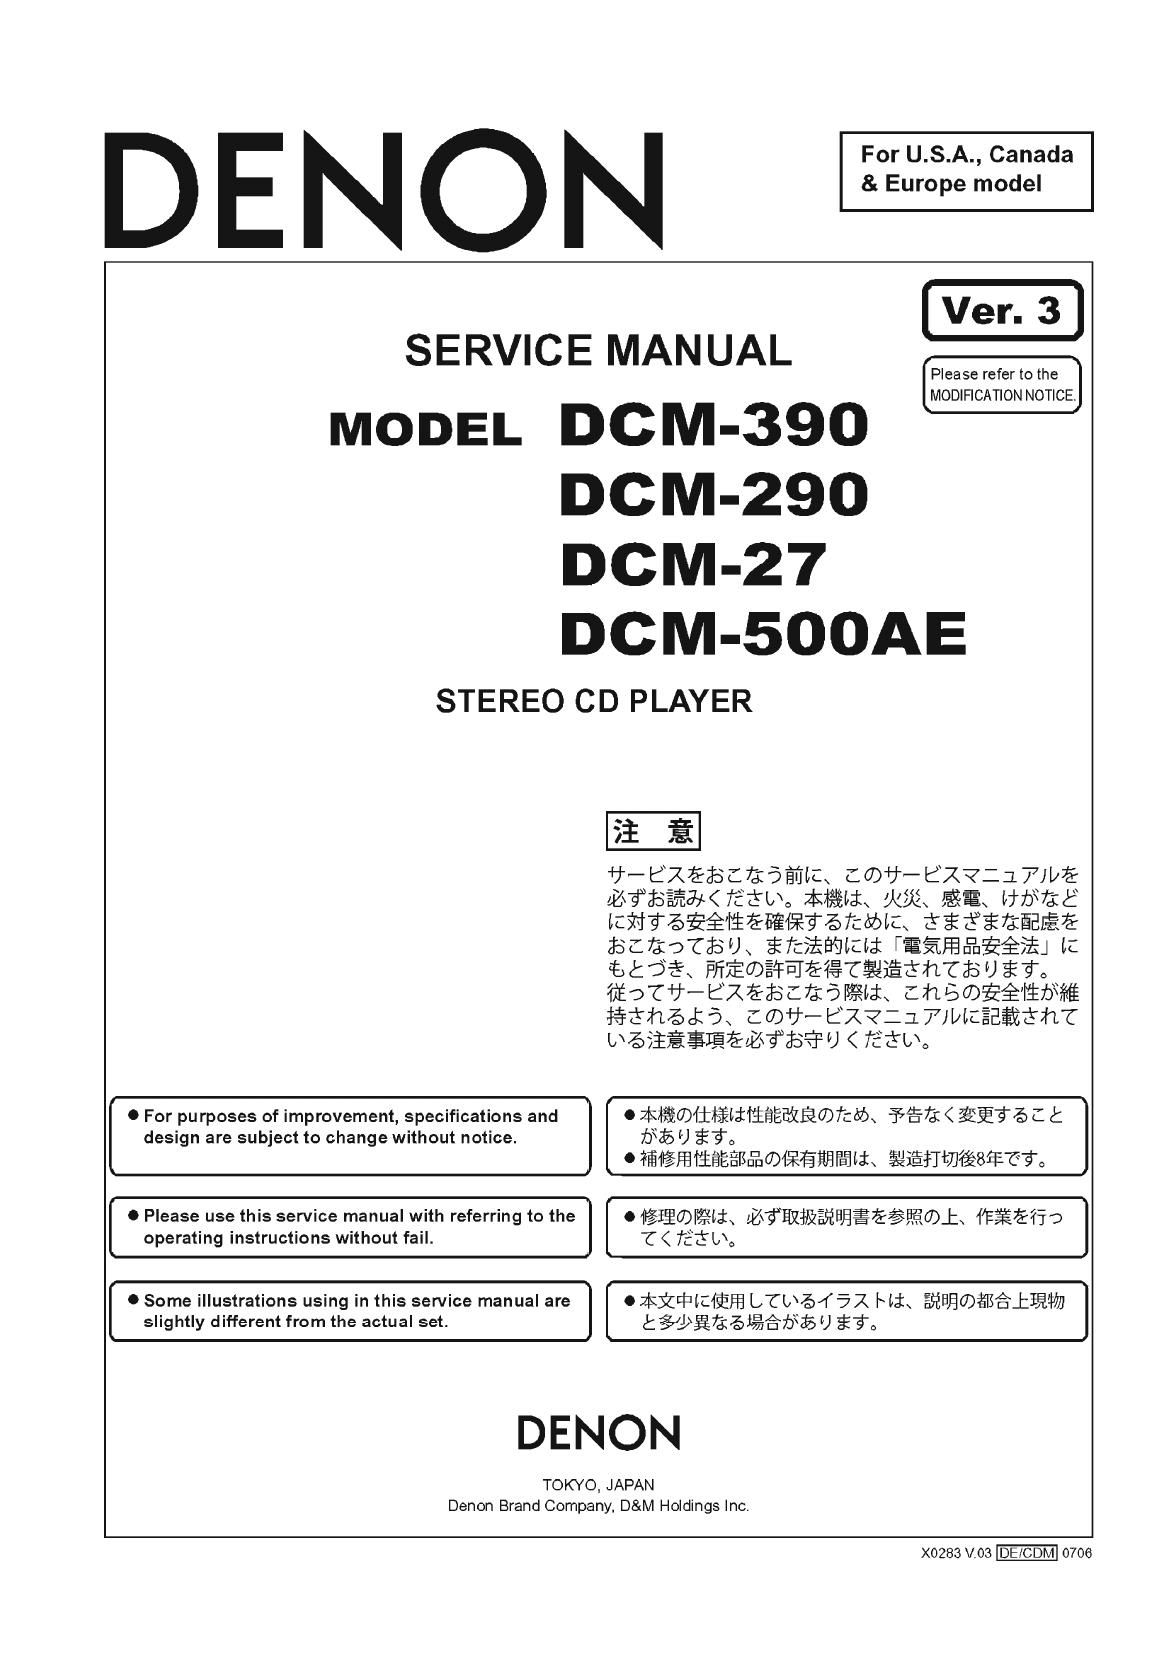 Denon DCM 290 Service Manual